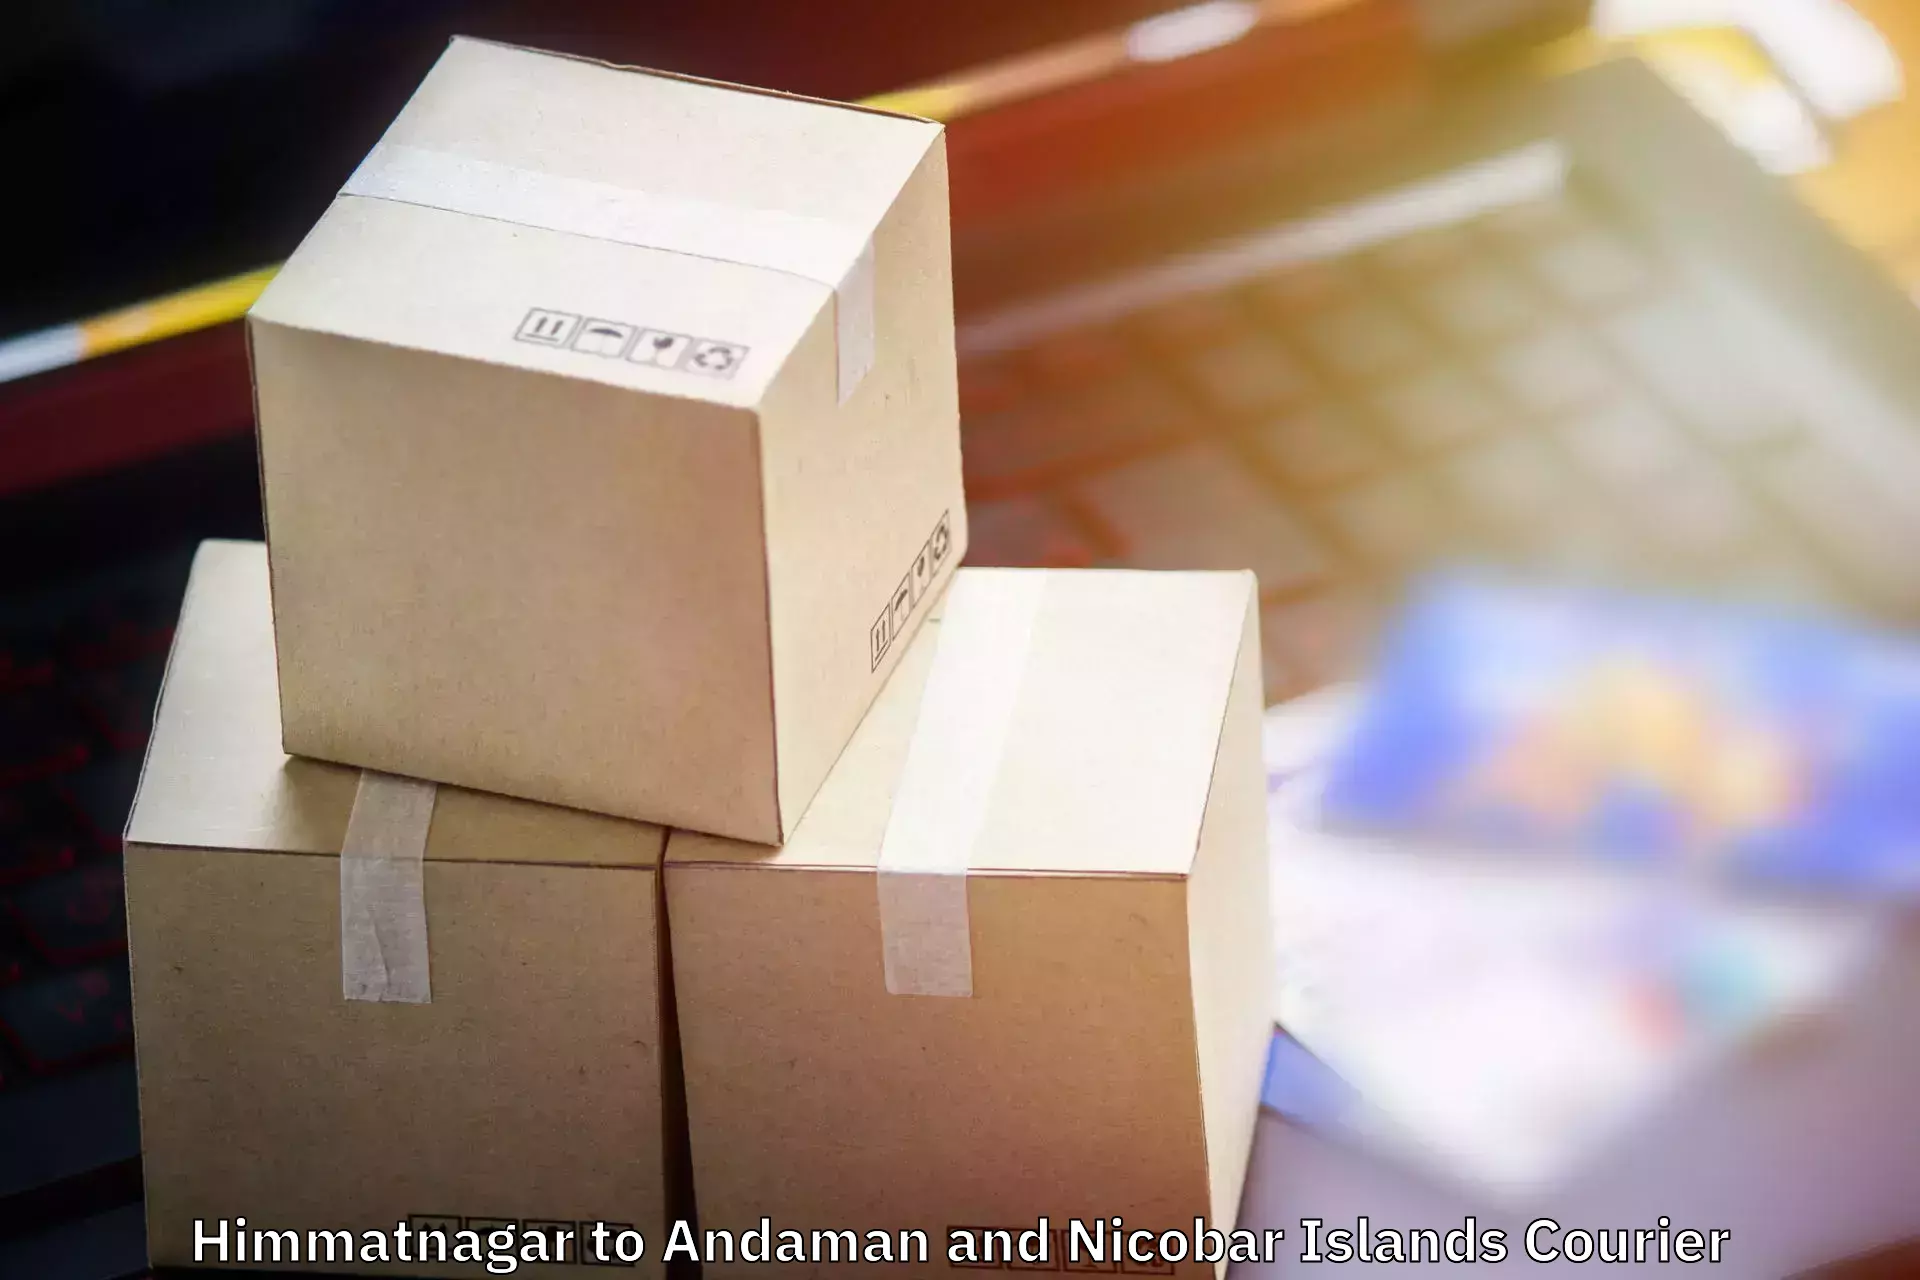 Baggage relocation service Himmatnagar to Andaman and Nicobar Islands